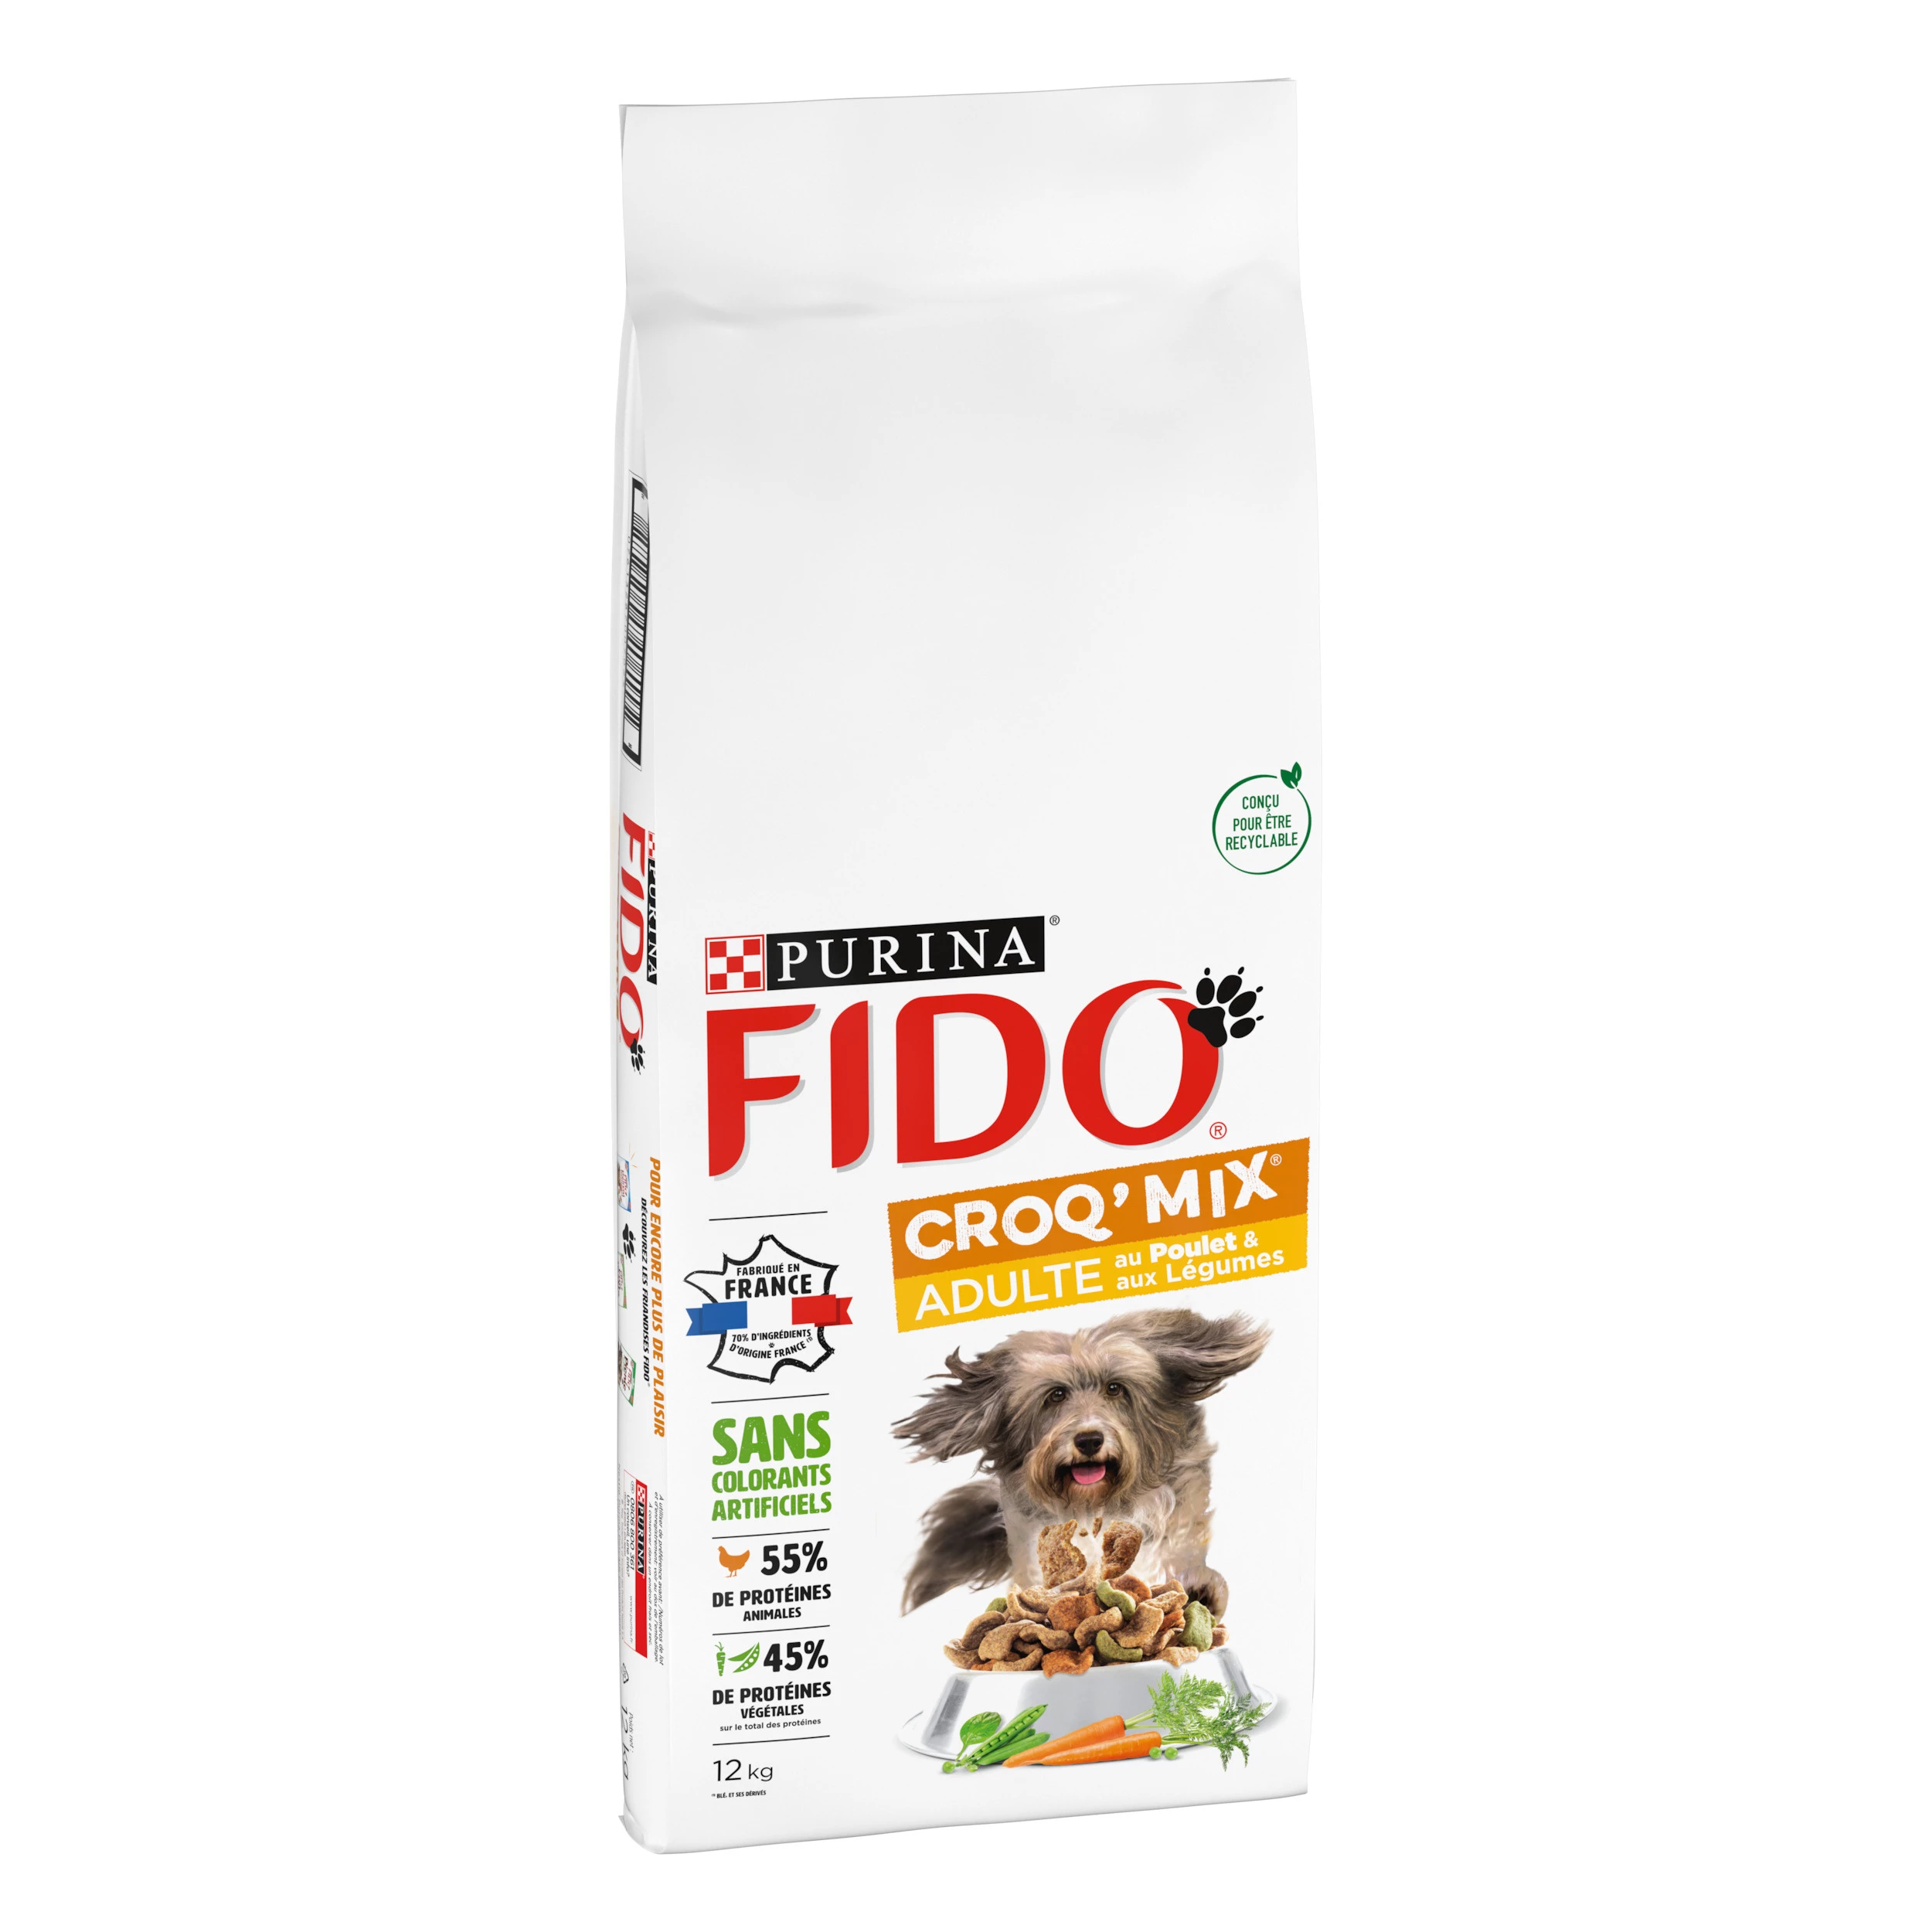 Fido Croq mix Adult met Kip en Groenten 12kg - PURINA